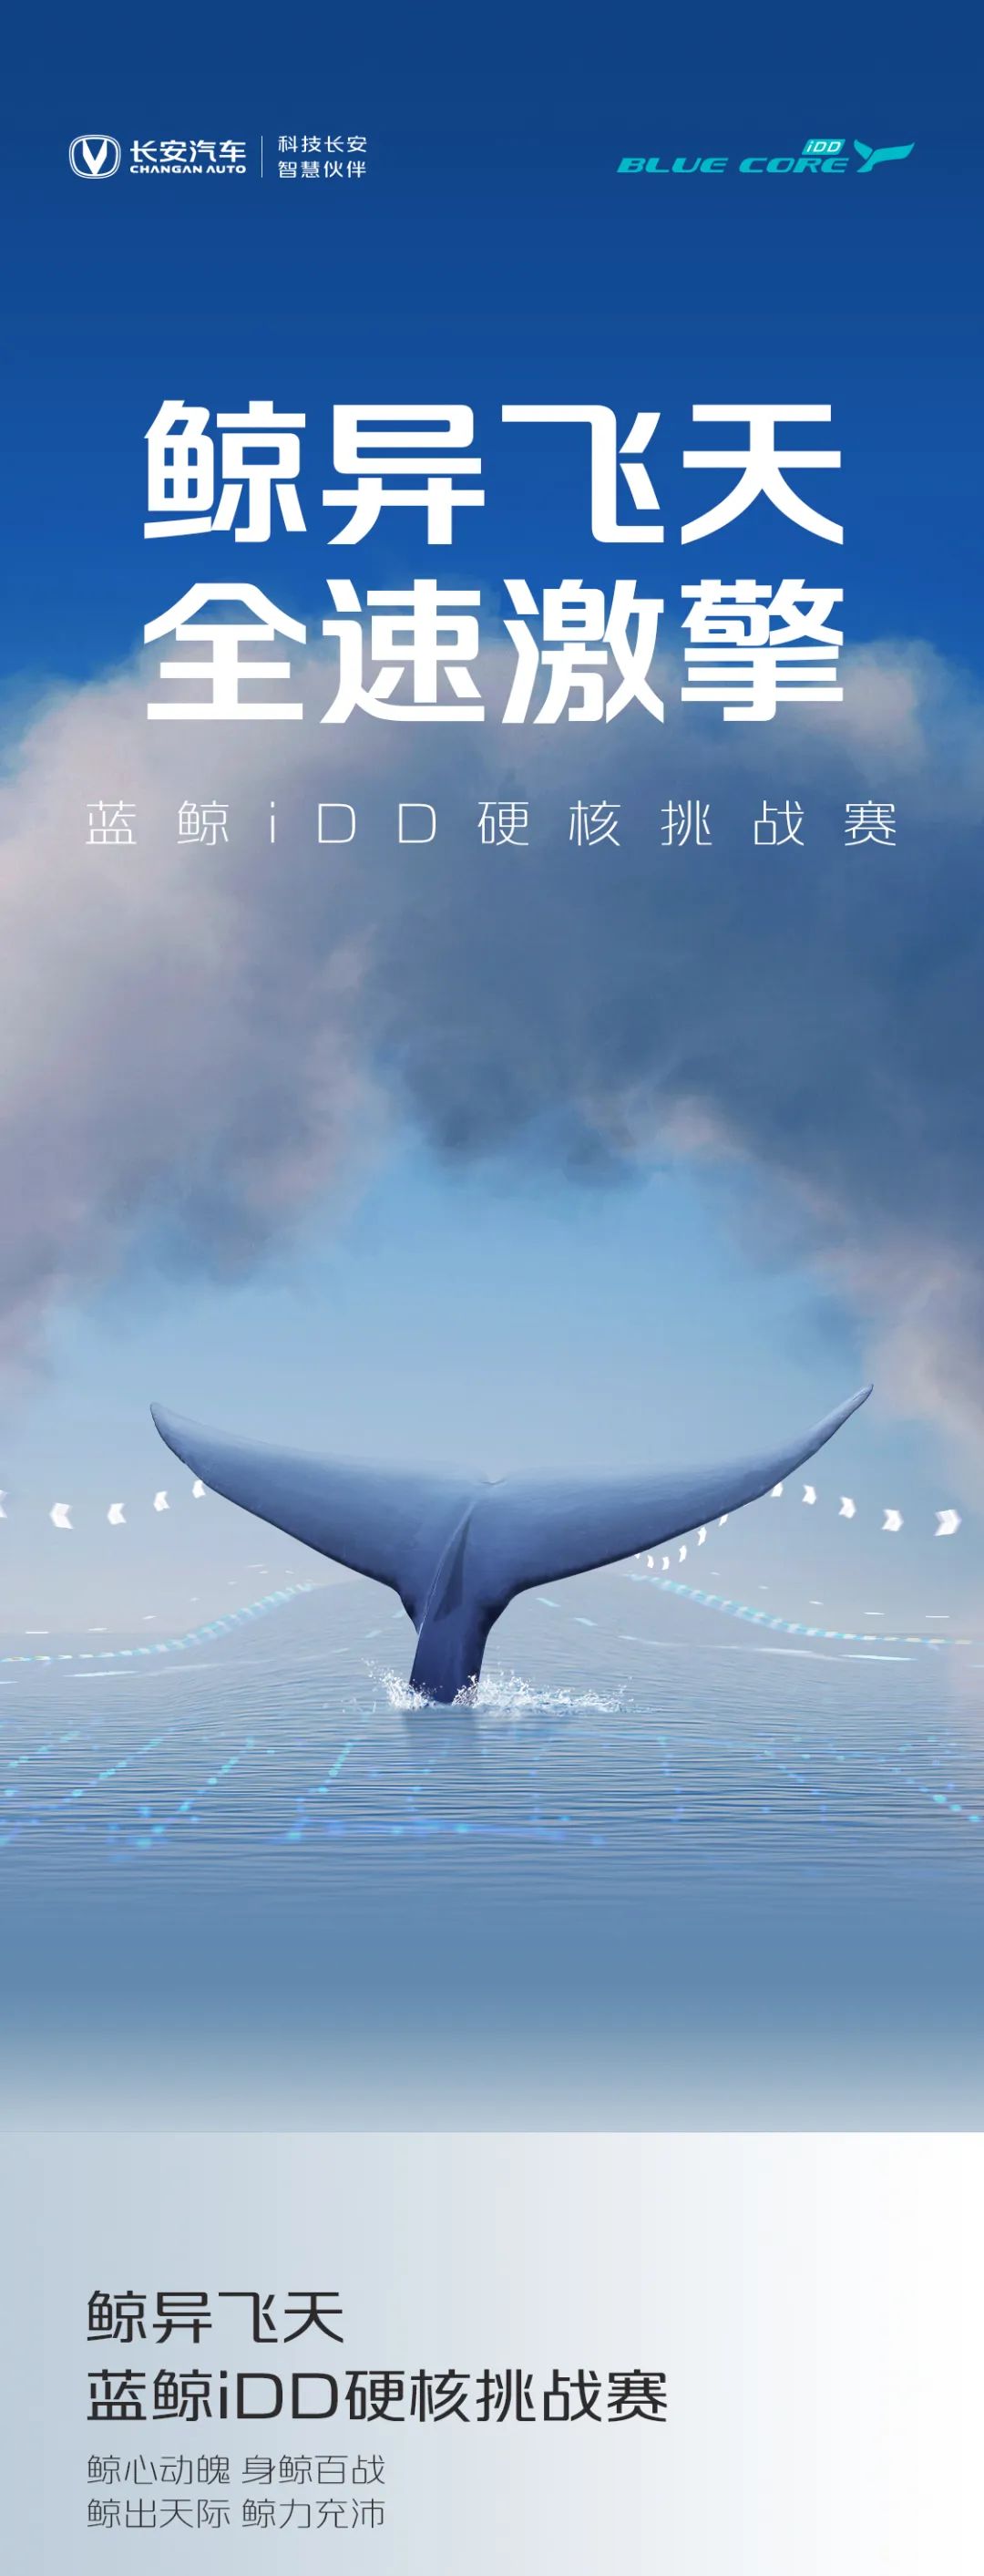 点击查看详细信息<br>标题：蓝鲸iDD硬核挑战赛丨高能无惧挑战 阅读次数：204